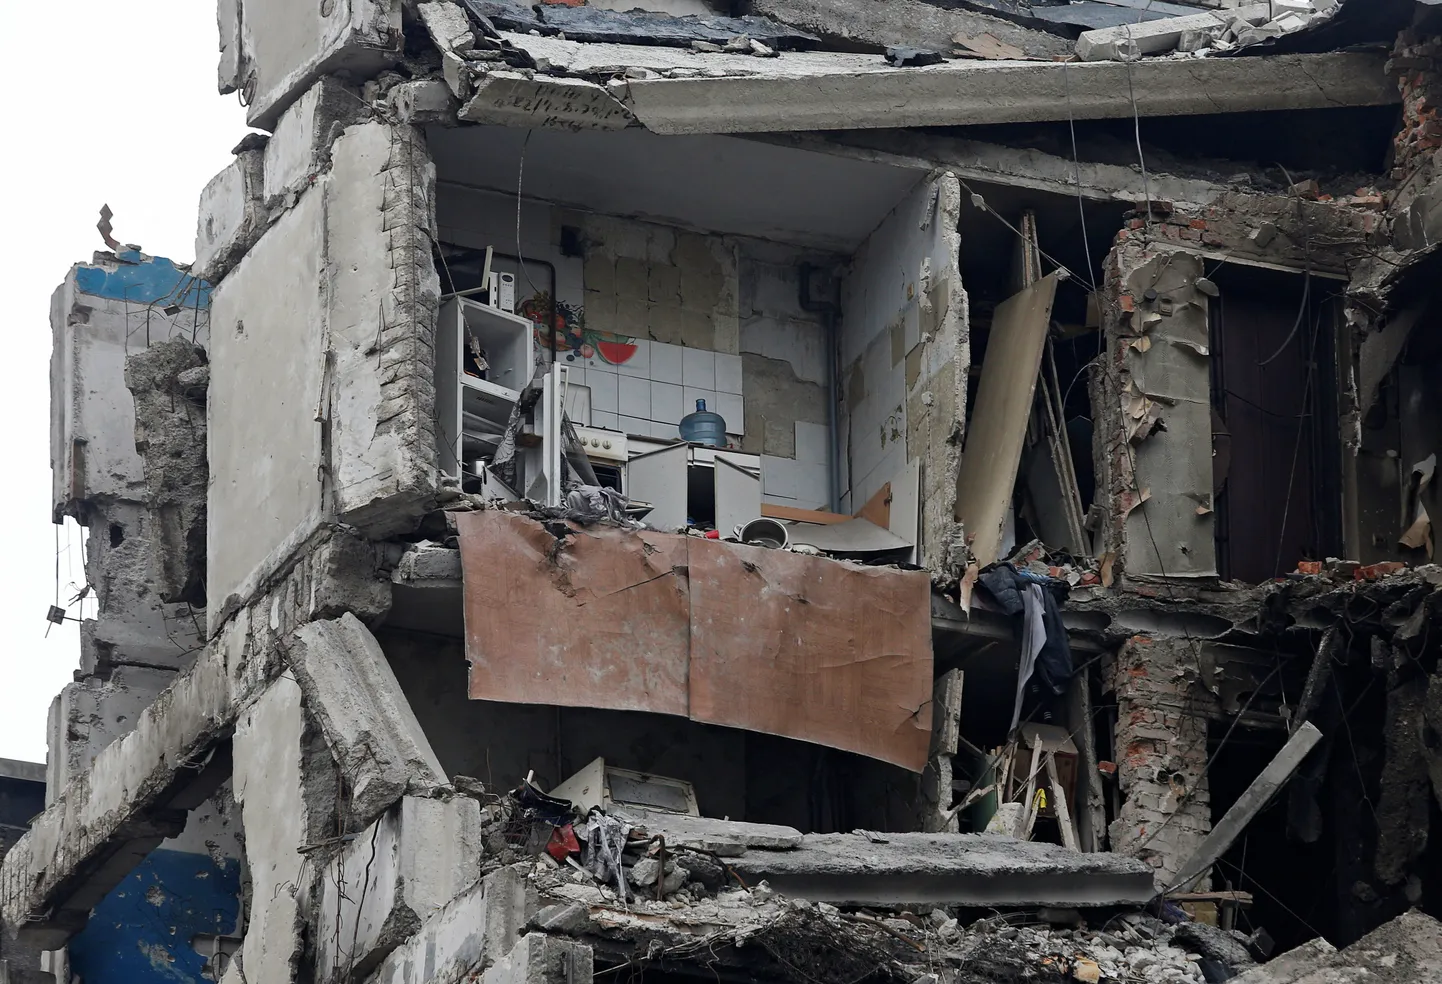 Attēlā redzama daudzdzīvokļu ēka, kas tika smagi bojāta Ukrainas un Krievijas konflikta laikā aplenktajā dienvidu ostas pilsētā Mariupolē, Ukrainā 2022. gada 27. martā.